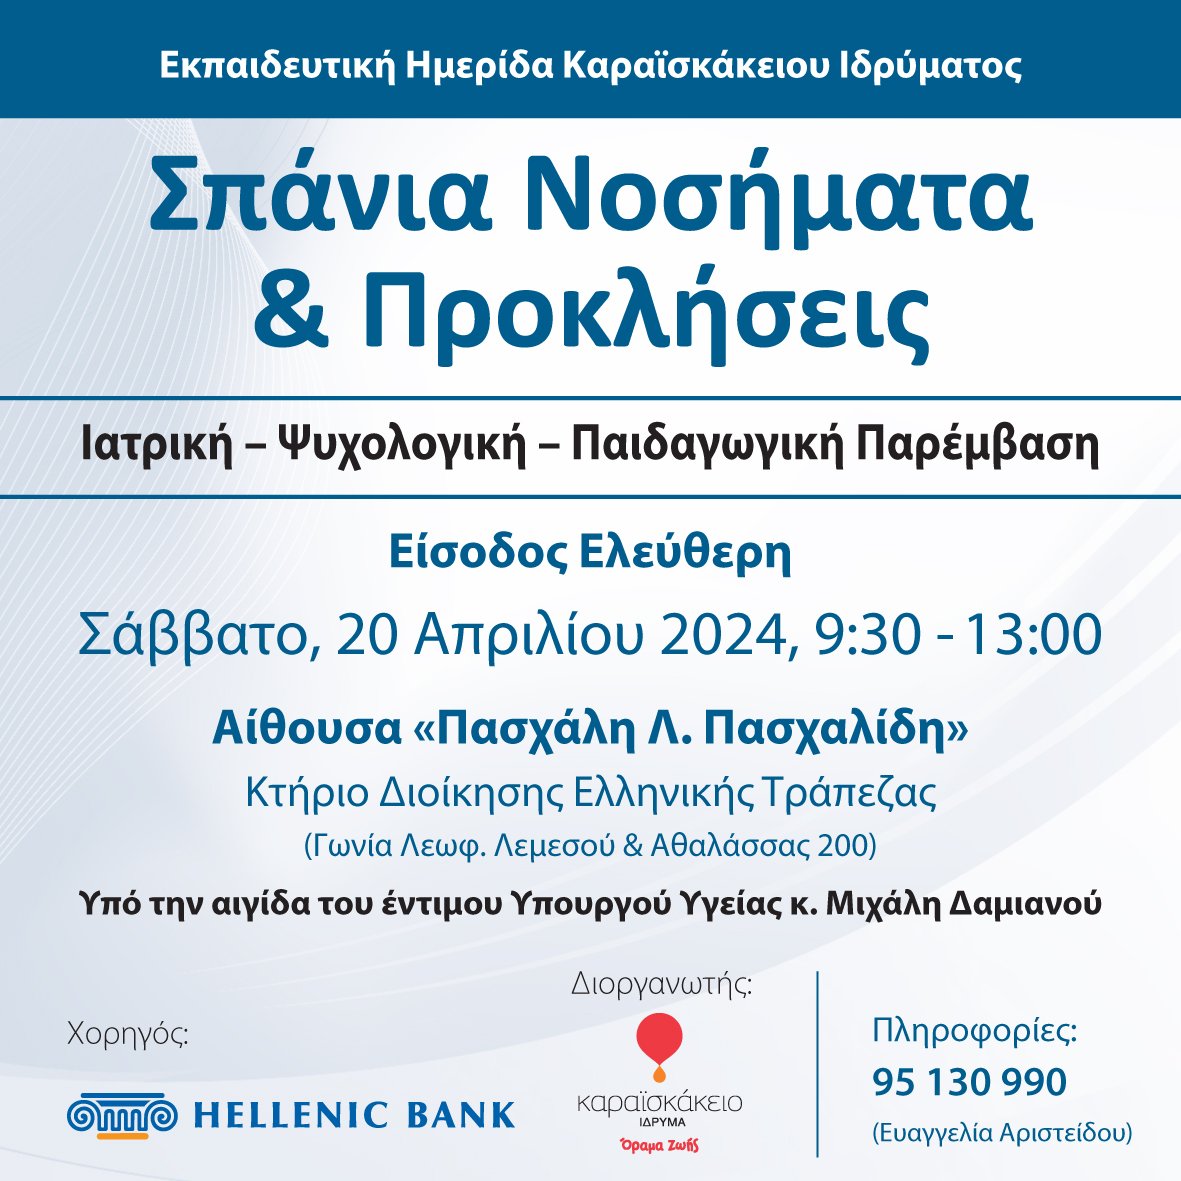 'ΣΠΑΝΙΑ ΝΟΣΗΜΑΤΑ ΚΑΙ ΠΡΟΚΛΗΣΕΙΣ' ΣΑΒΒΑΤΟ 20 ΑΠΡΙΛΙΟΥ 2024 ΣΤΙΣ 9:00 (Κτήριο Διοίκησης Ελληνικής Τράπεζας). ΕΙΣΟΔΟΣ ΕΛΕΥΘΕΡΗ. *Θα δοθεί πιστοποιητικό συμμετοχής. @Karaiskakio @HellenicBank